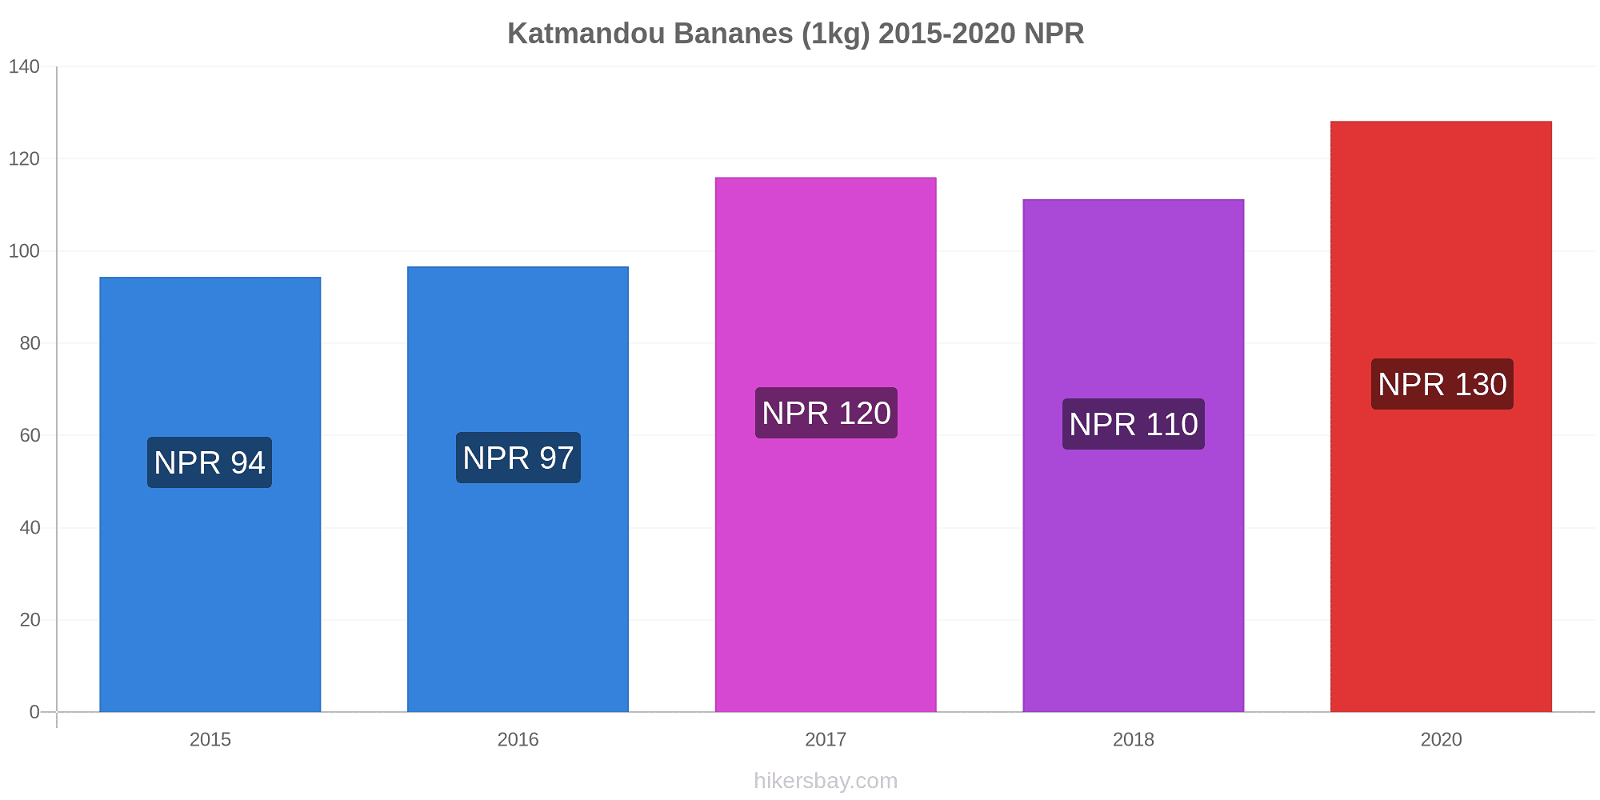 Katmandou changements de prix Bananes (1kg) hikersbay.com